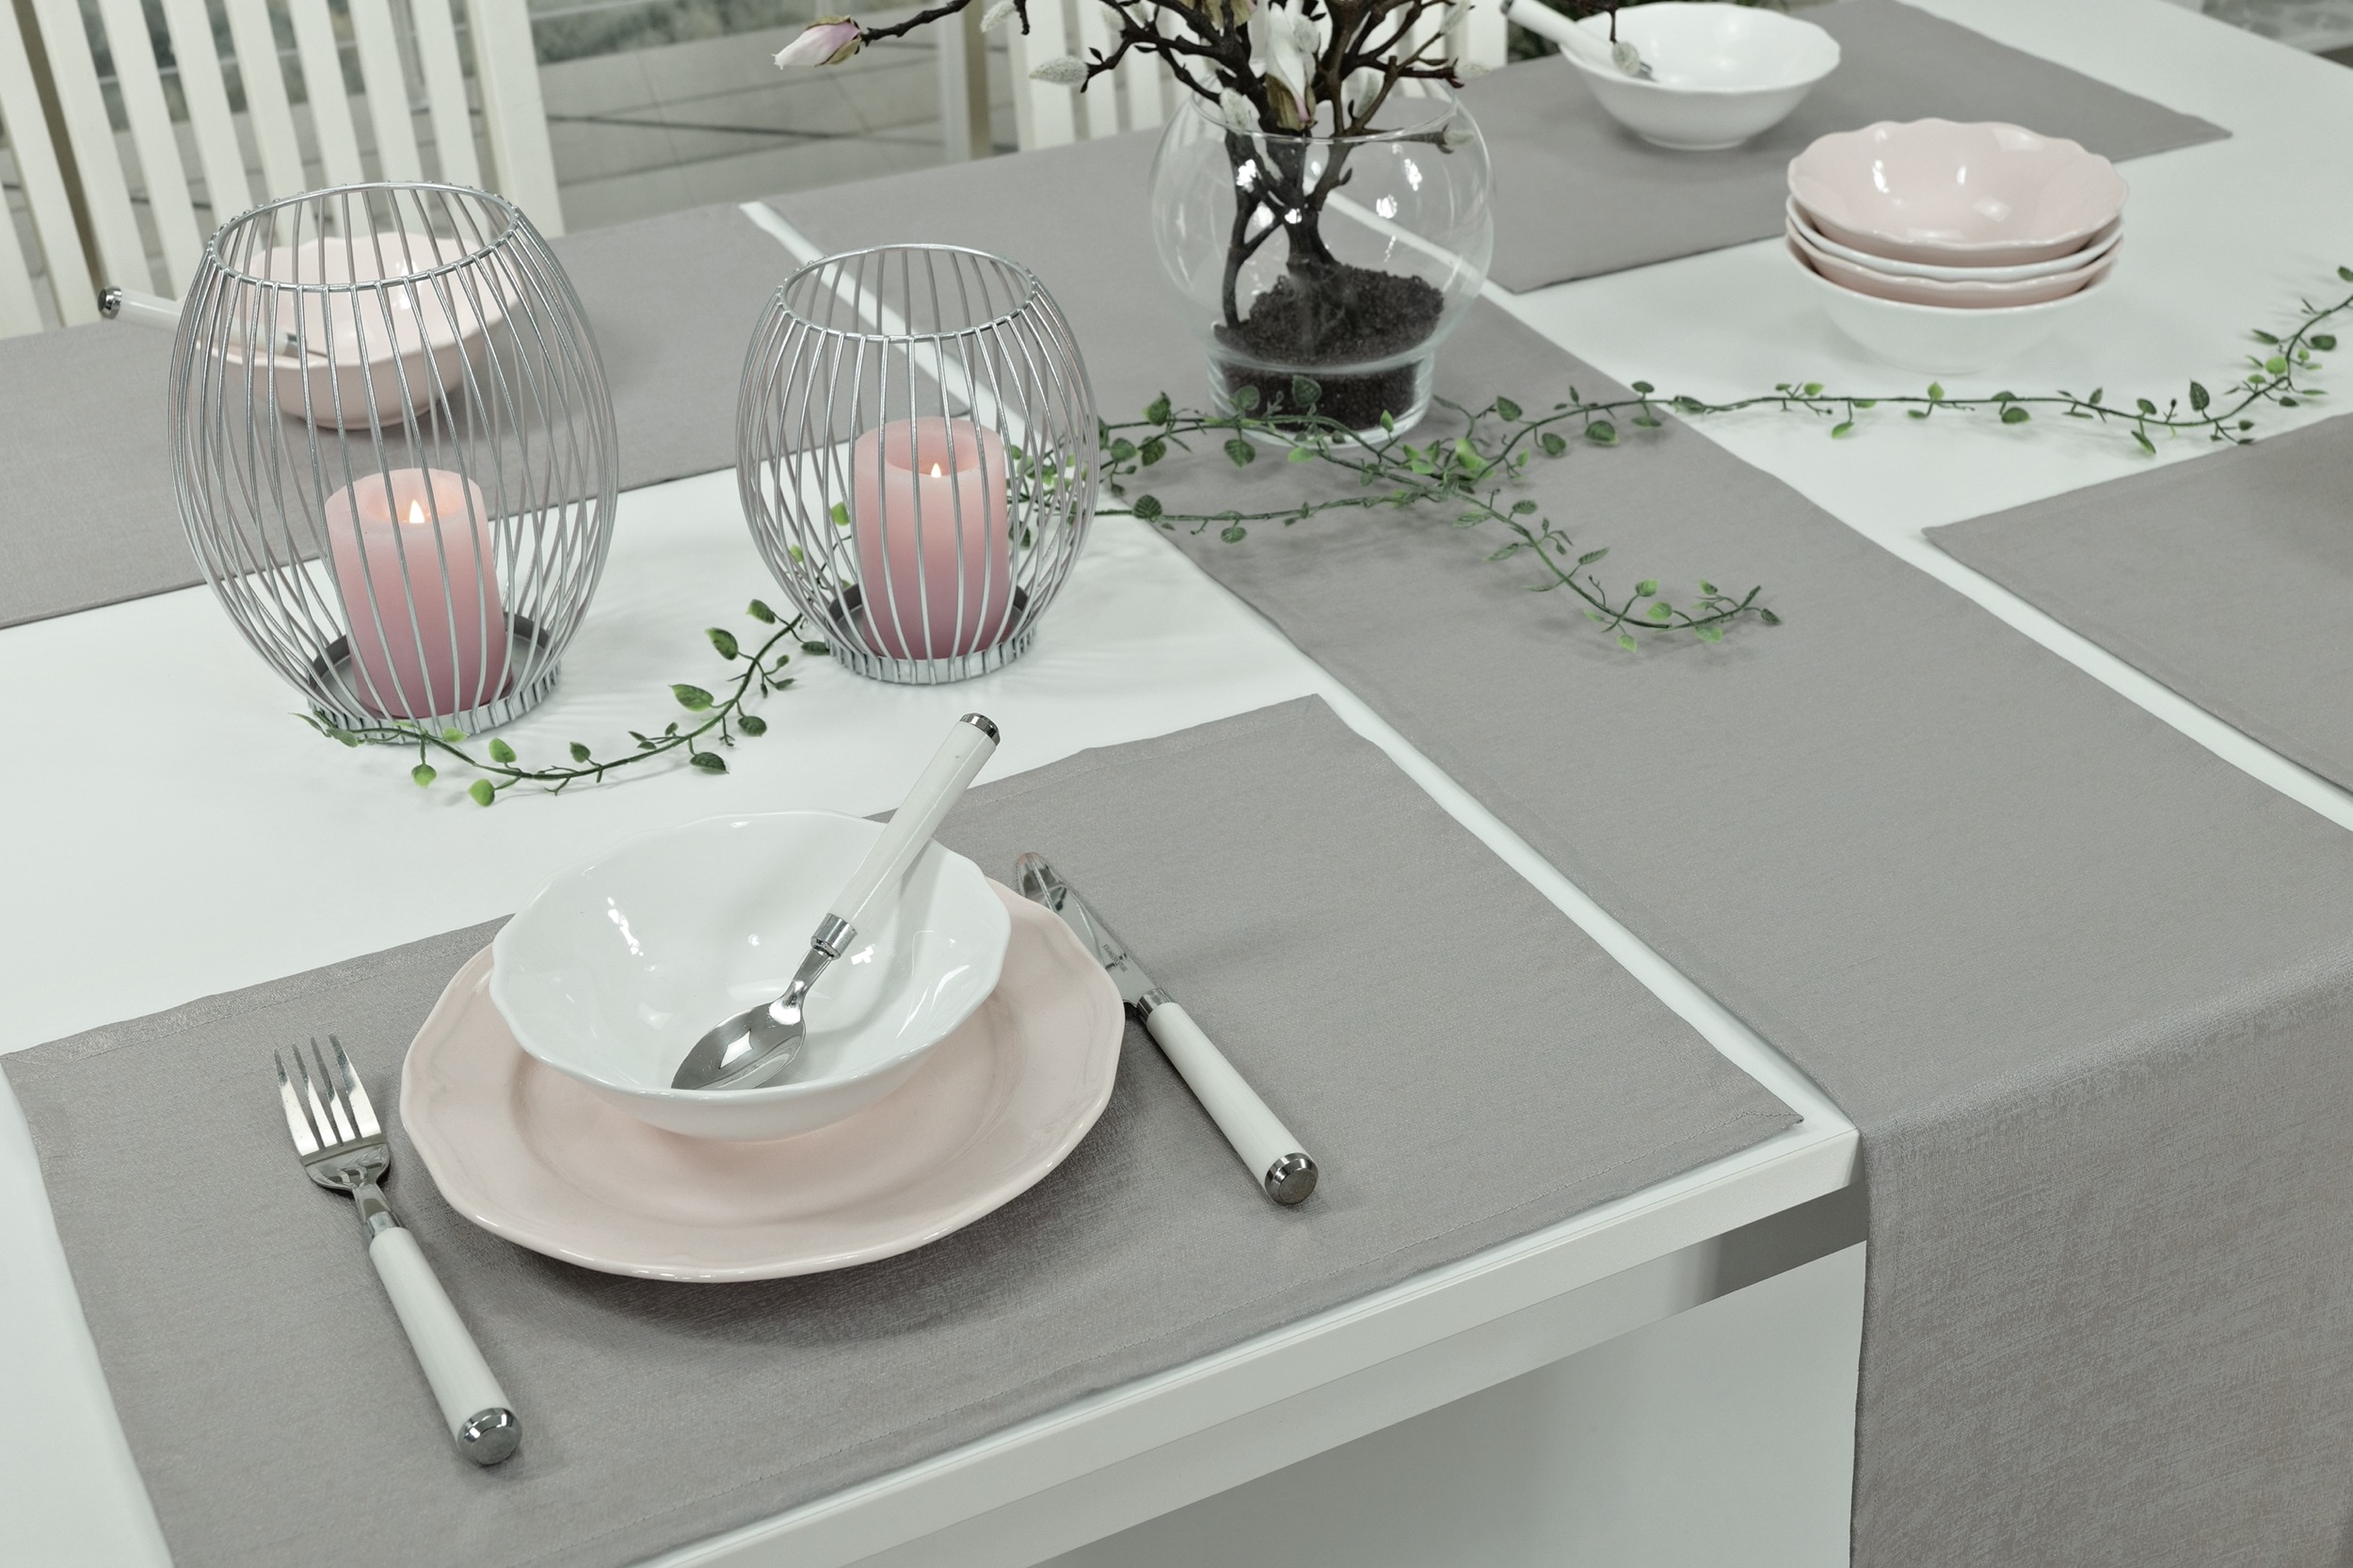 Abwaschbare Tischläufer Grau uni strukturiert Muriel Breite 40 cm